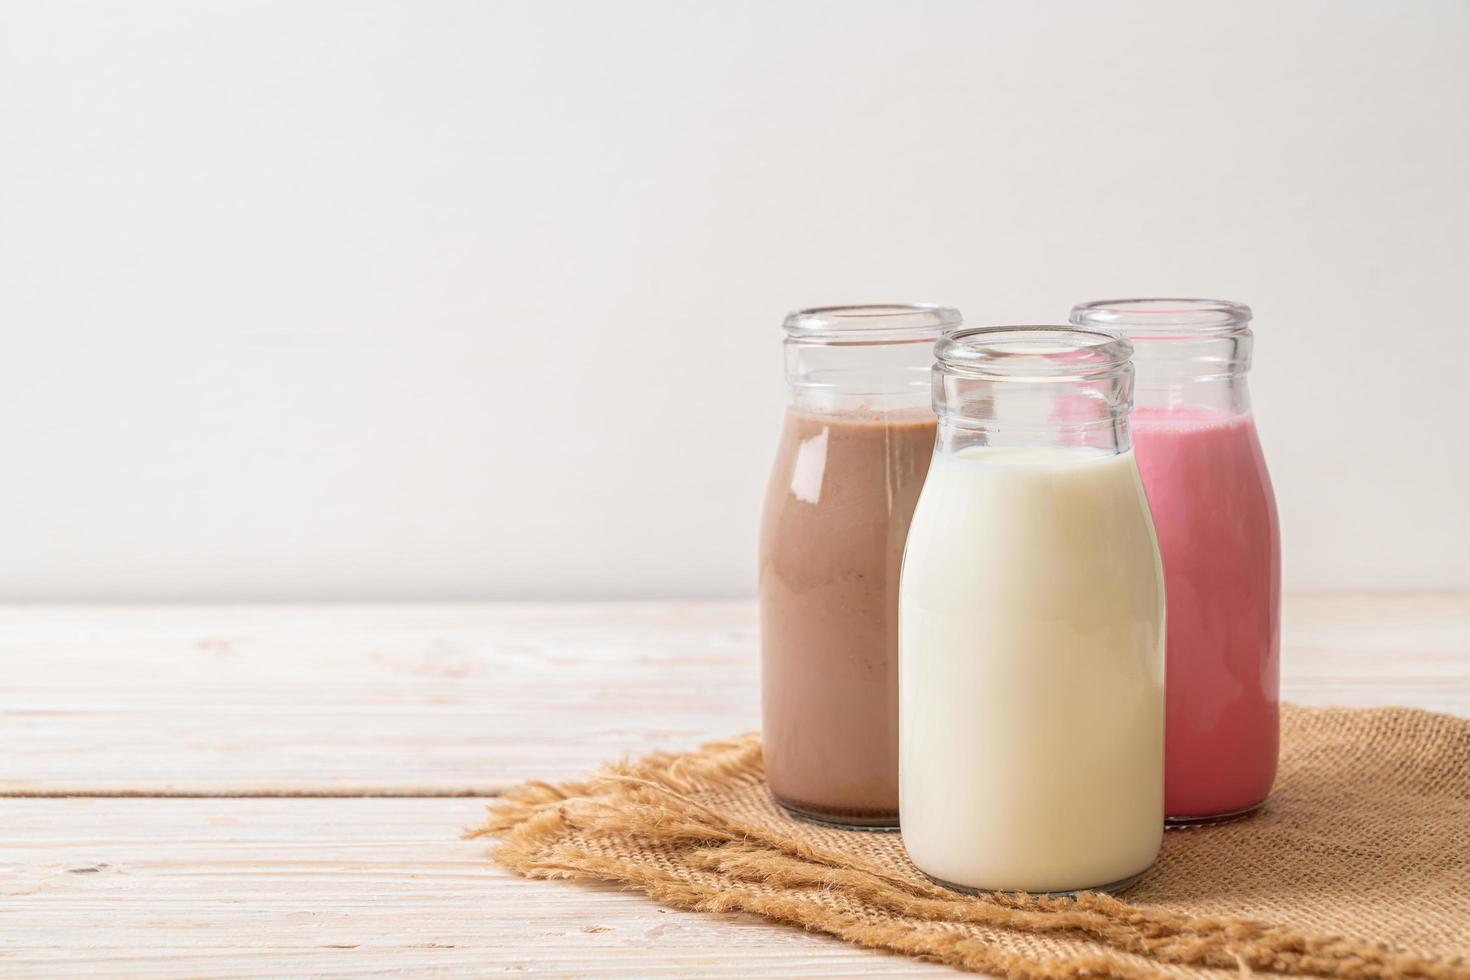 samling av dryckchokladmjölk, rosa mjölk och färsk mjölk i flaska på träbord foto